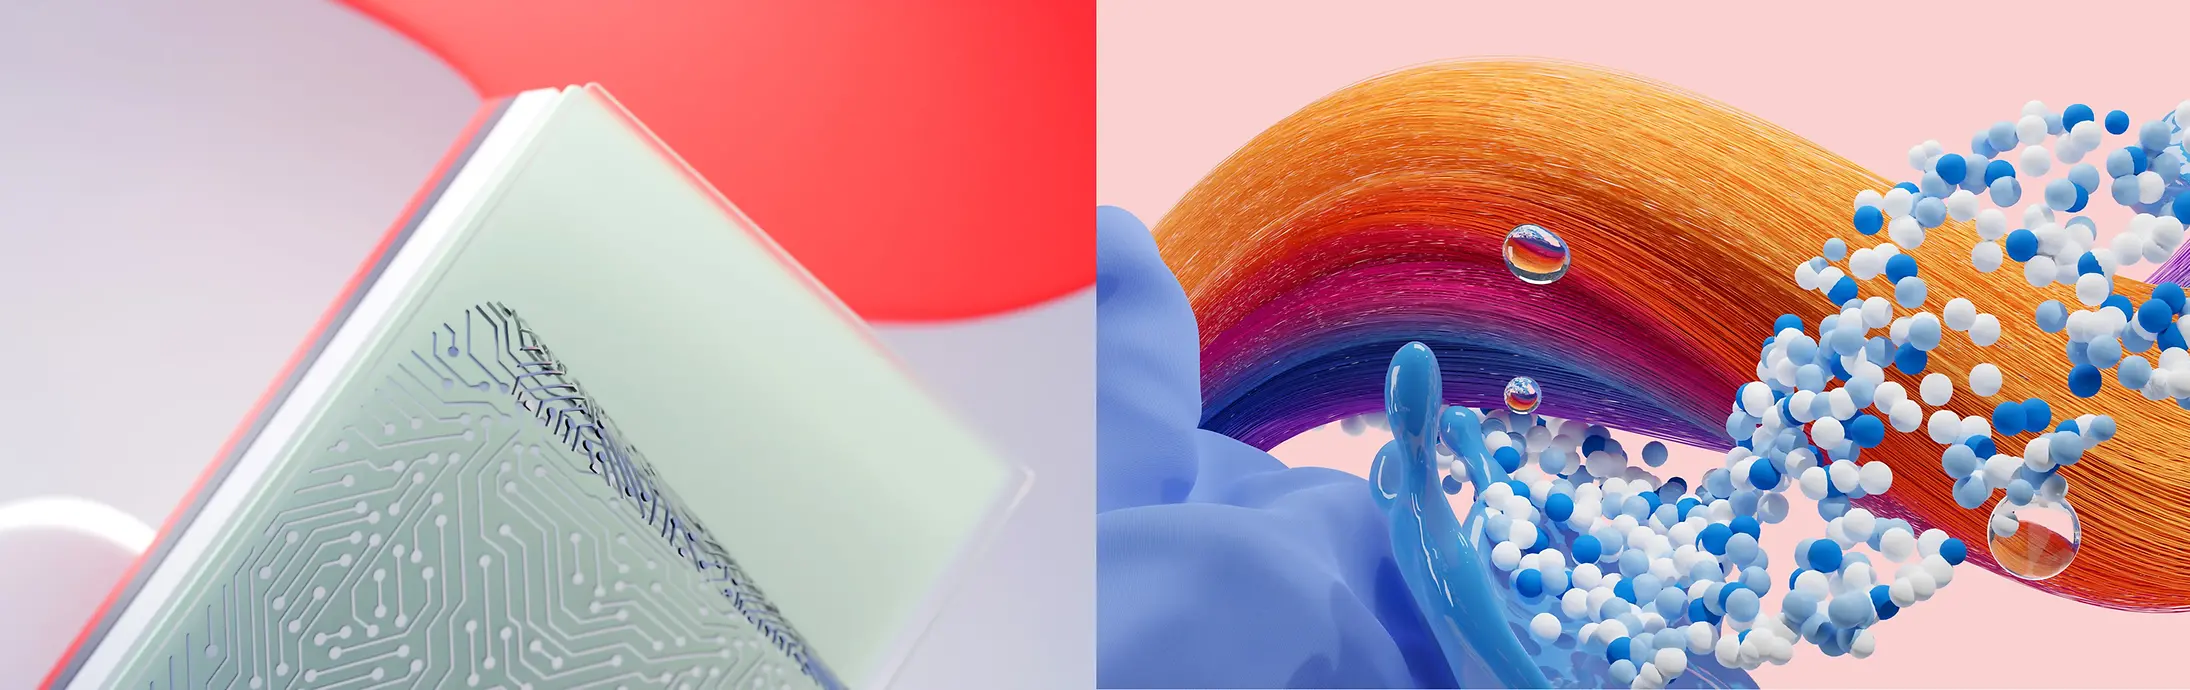 Abstracte afbeelding die de Henkel activiteiten Adhesive Technologies, Hair en Laundry & Home Care vertegenwoordigt.